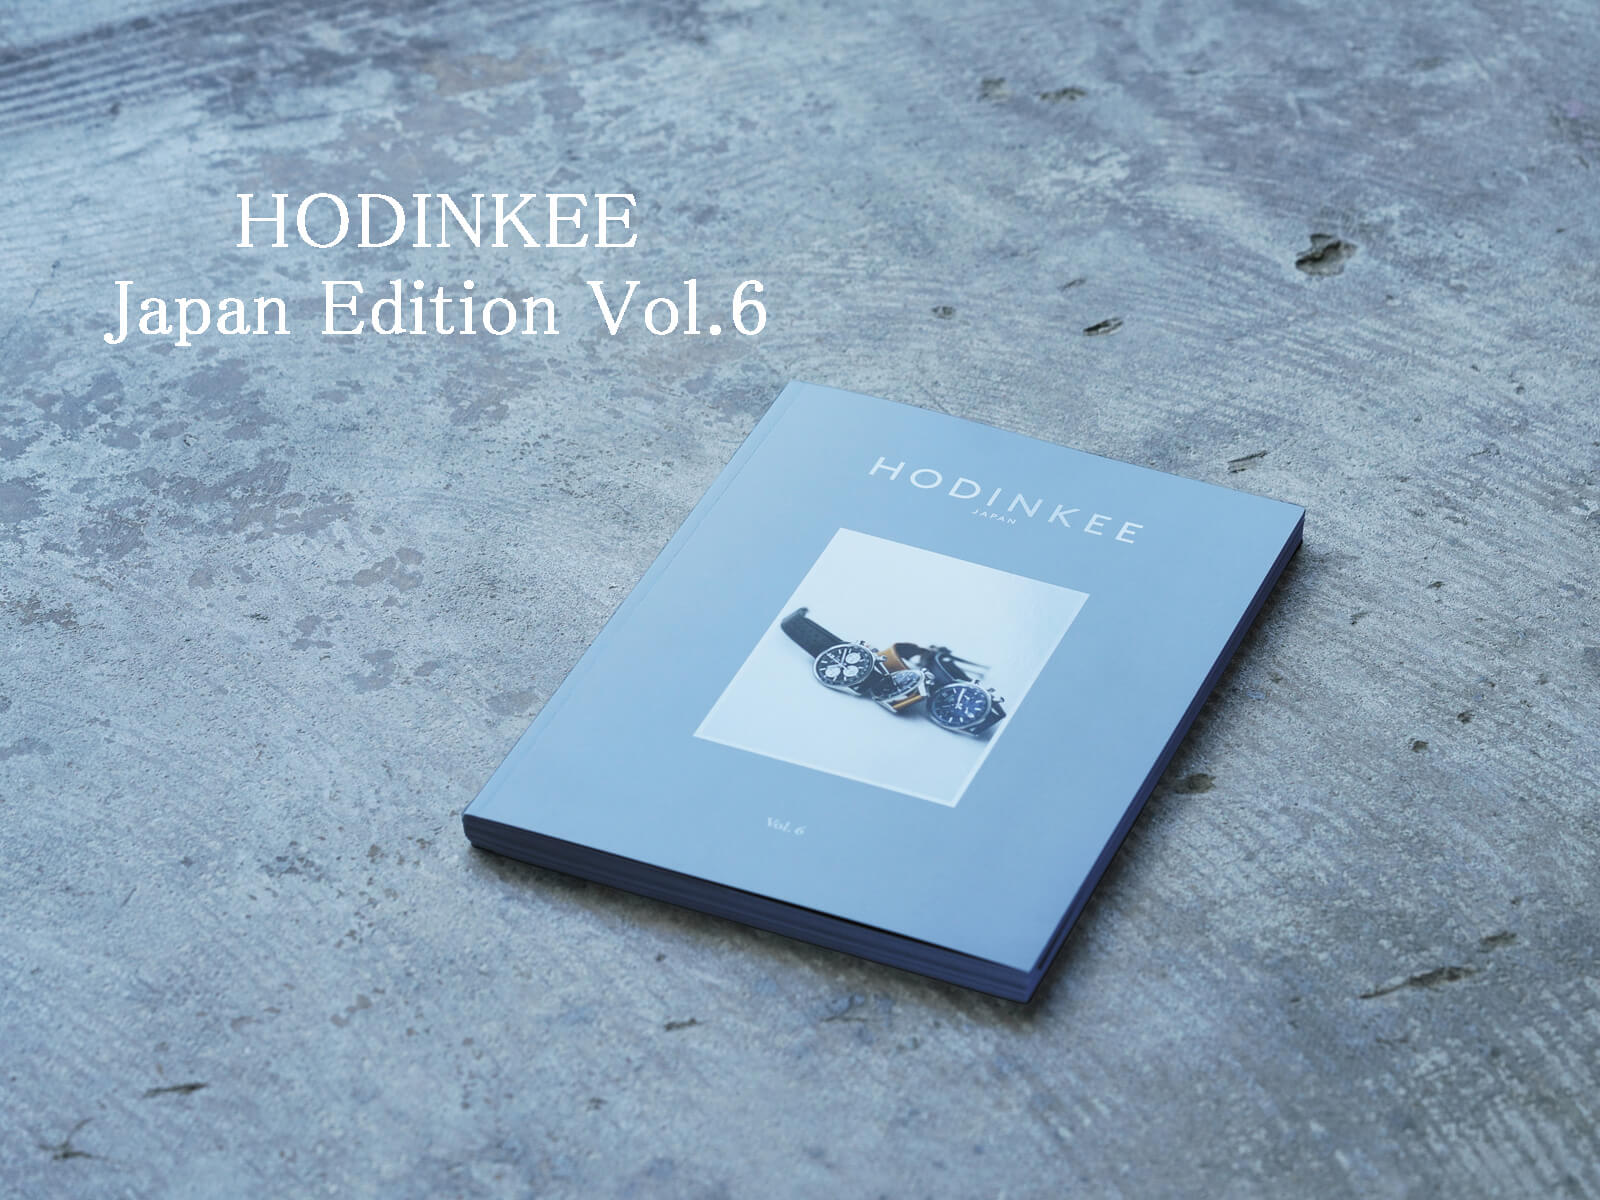 HODINKEE Japan Edition Vol.6 販売開始のお知らせ